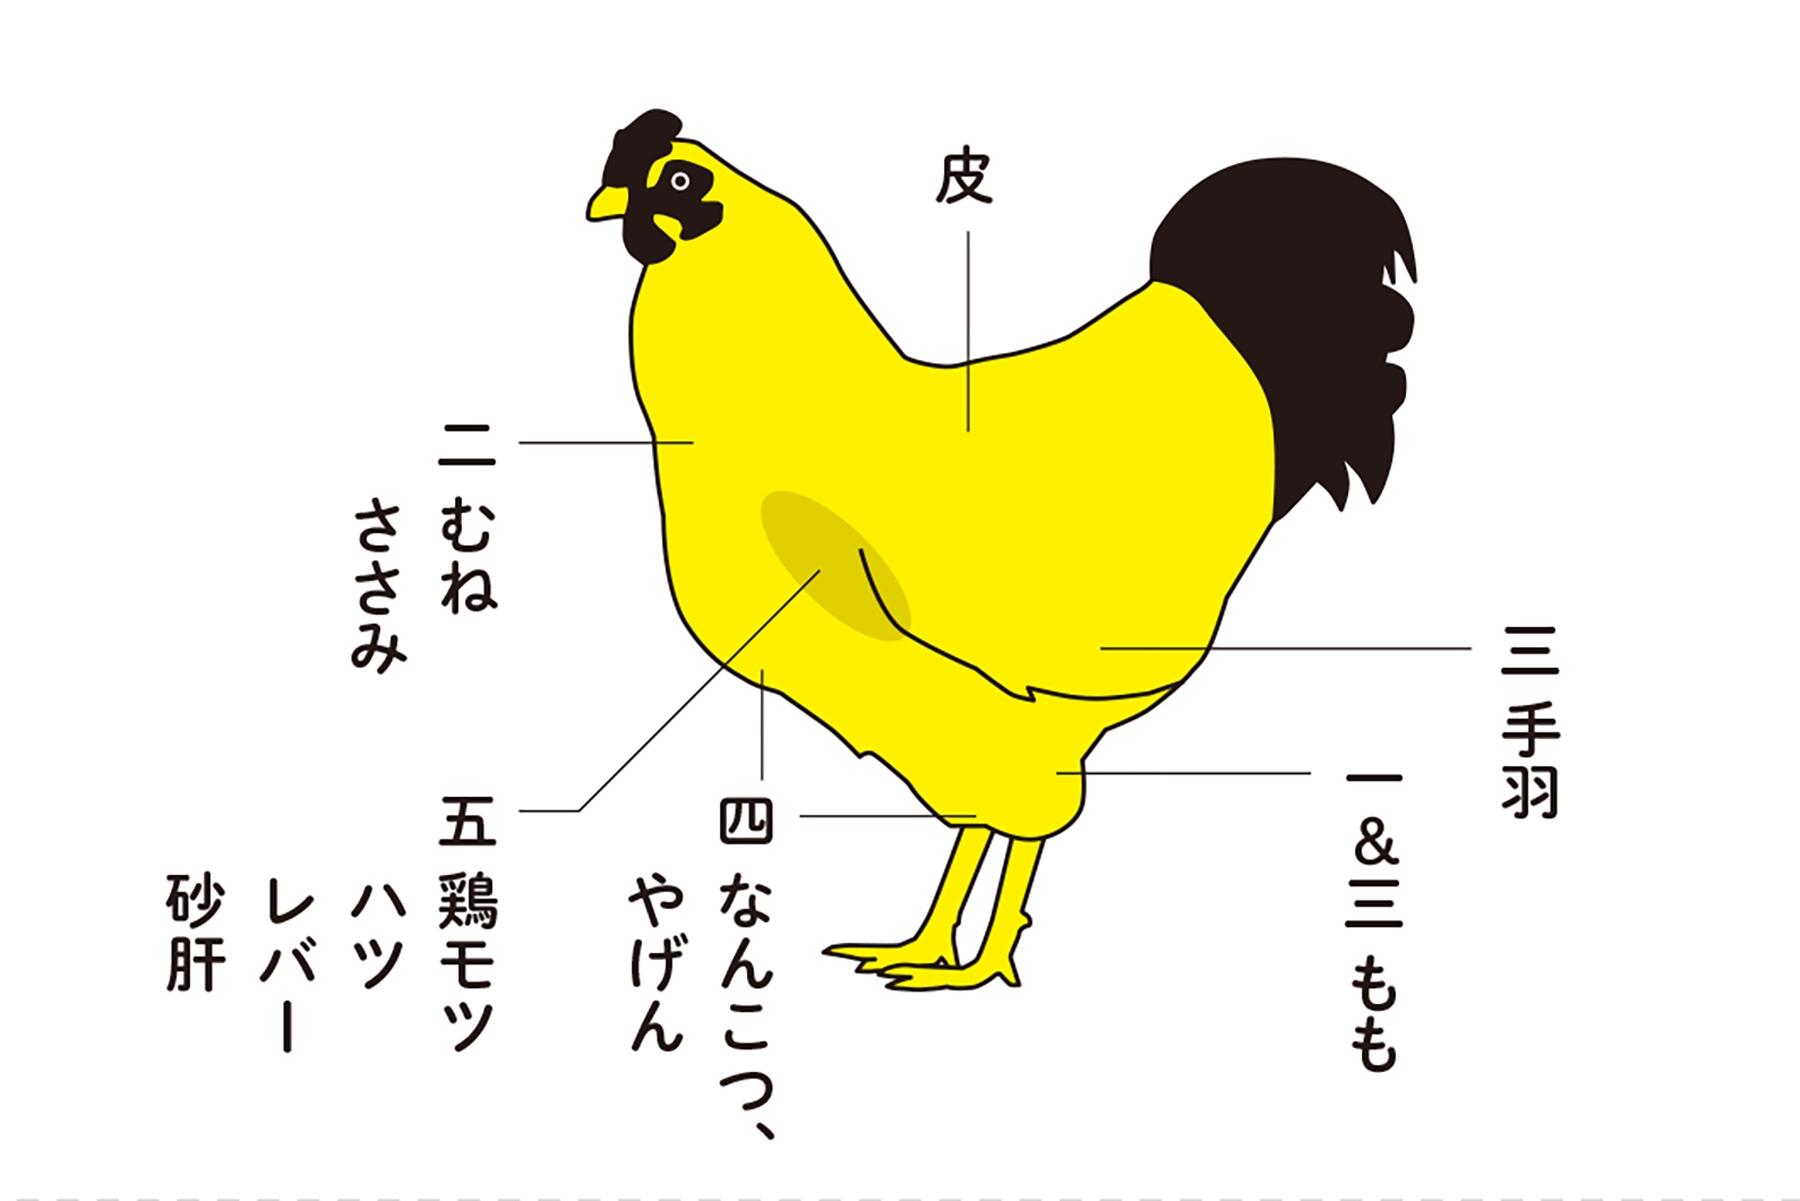 ビール衣で軽やかに揚げる 鶏もつから揚げ 一羽まるごと揚げちゃう鶏からレシピ 公式 Dancyu ダンチュウ